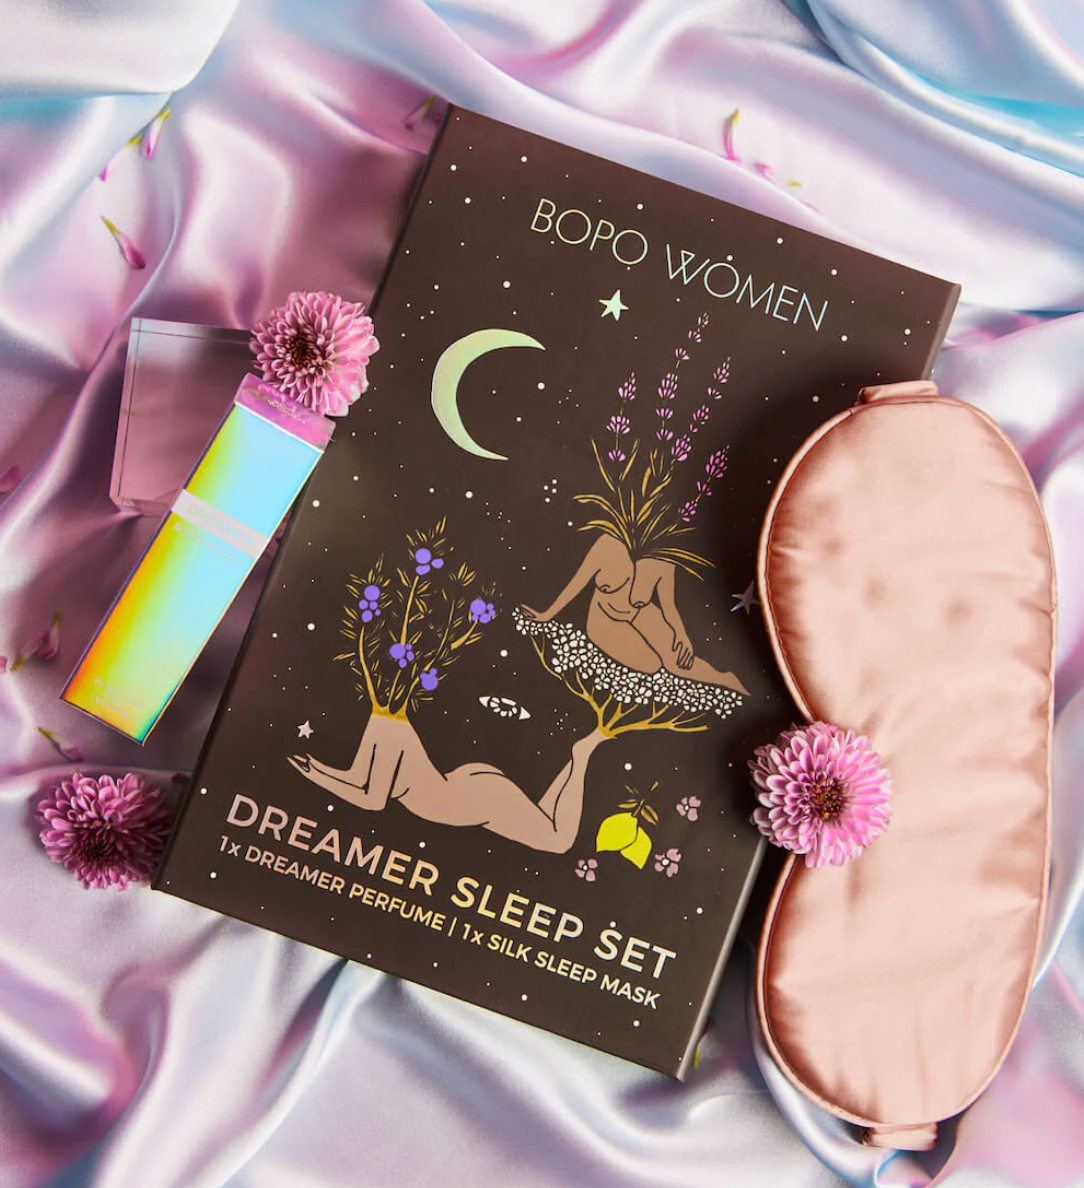 Bopo Dreamer Serene Sleep Set